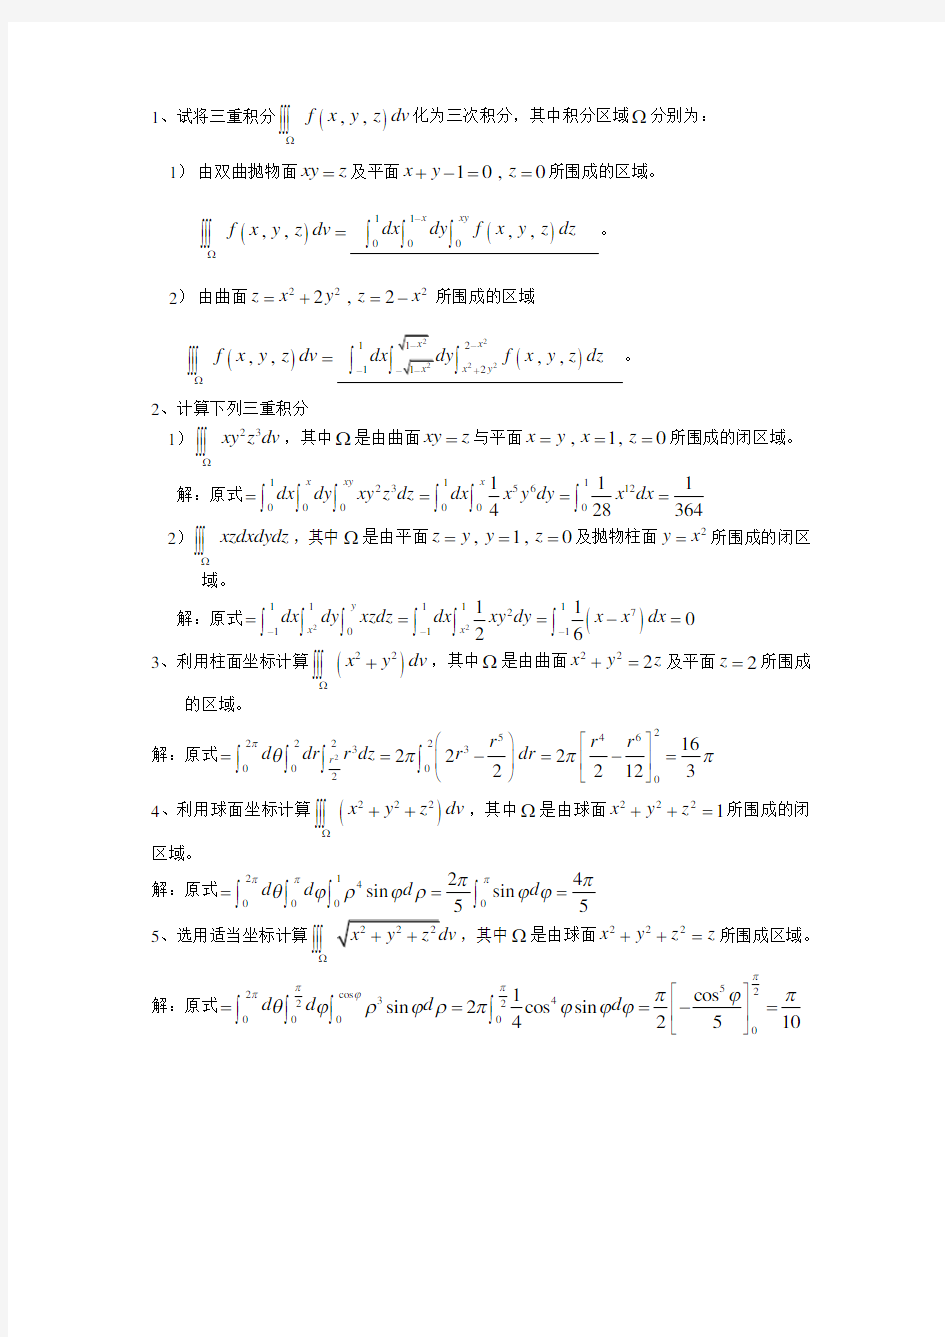 (完整版)高等数学-微积分下-分节习题册答案-华南理工大学(33)